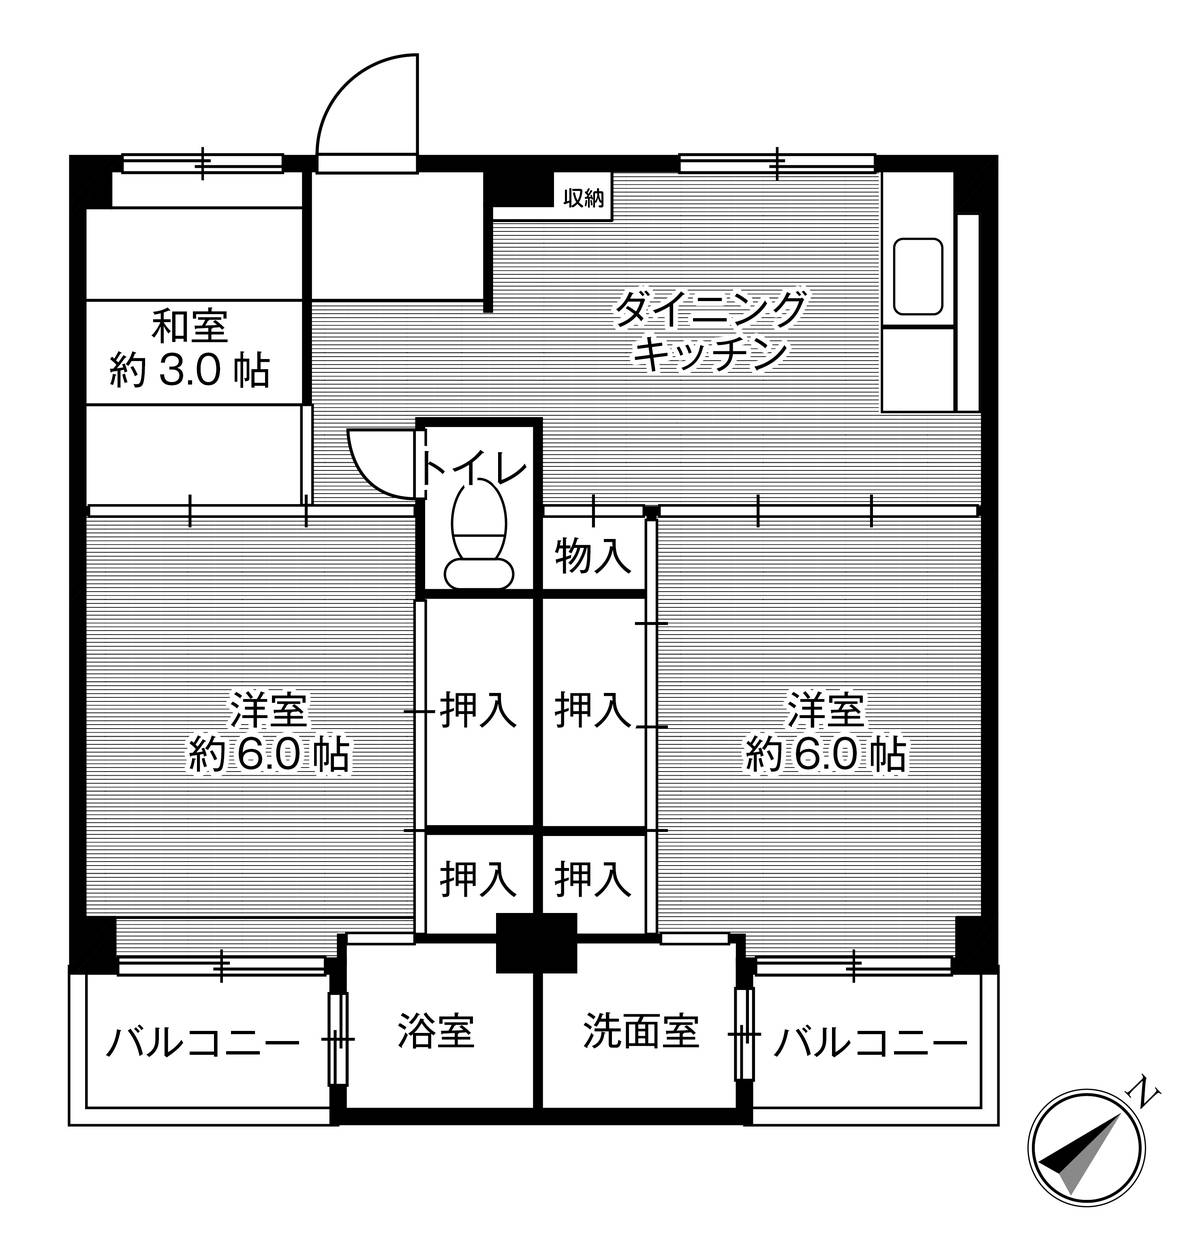 Sơ đồ phòng 3DK của Village House Mise ở Kashihara-shi